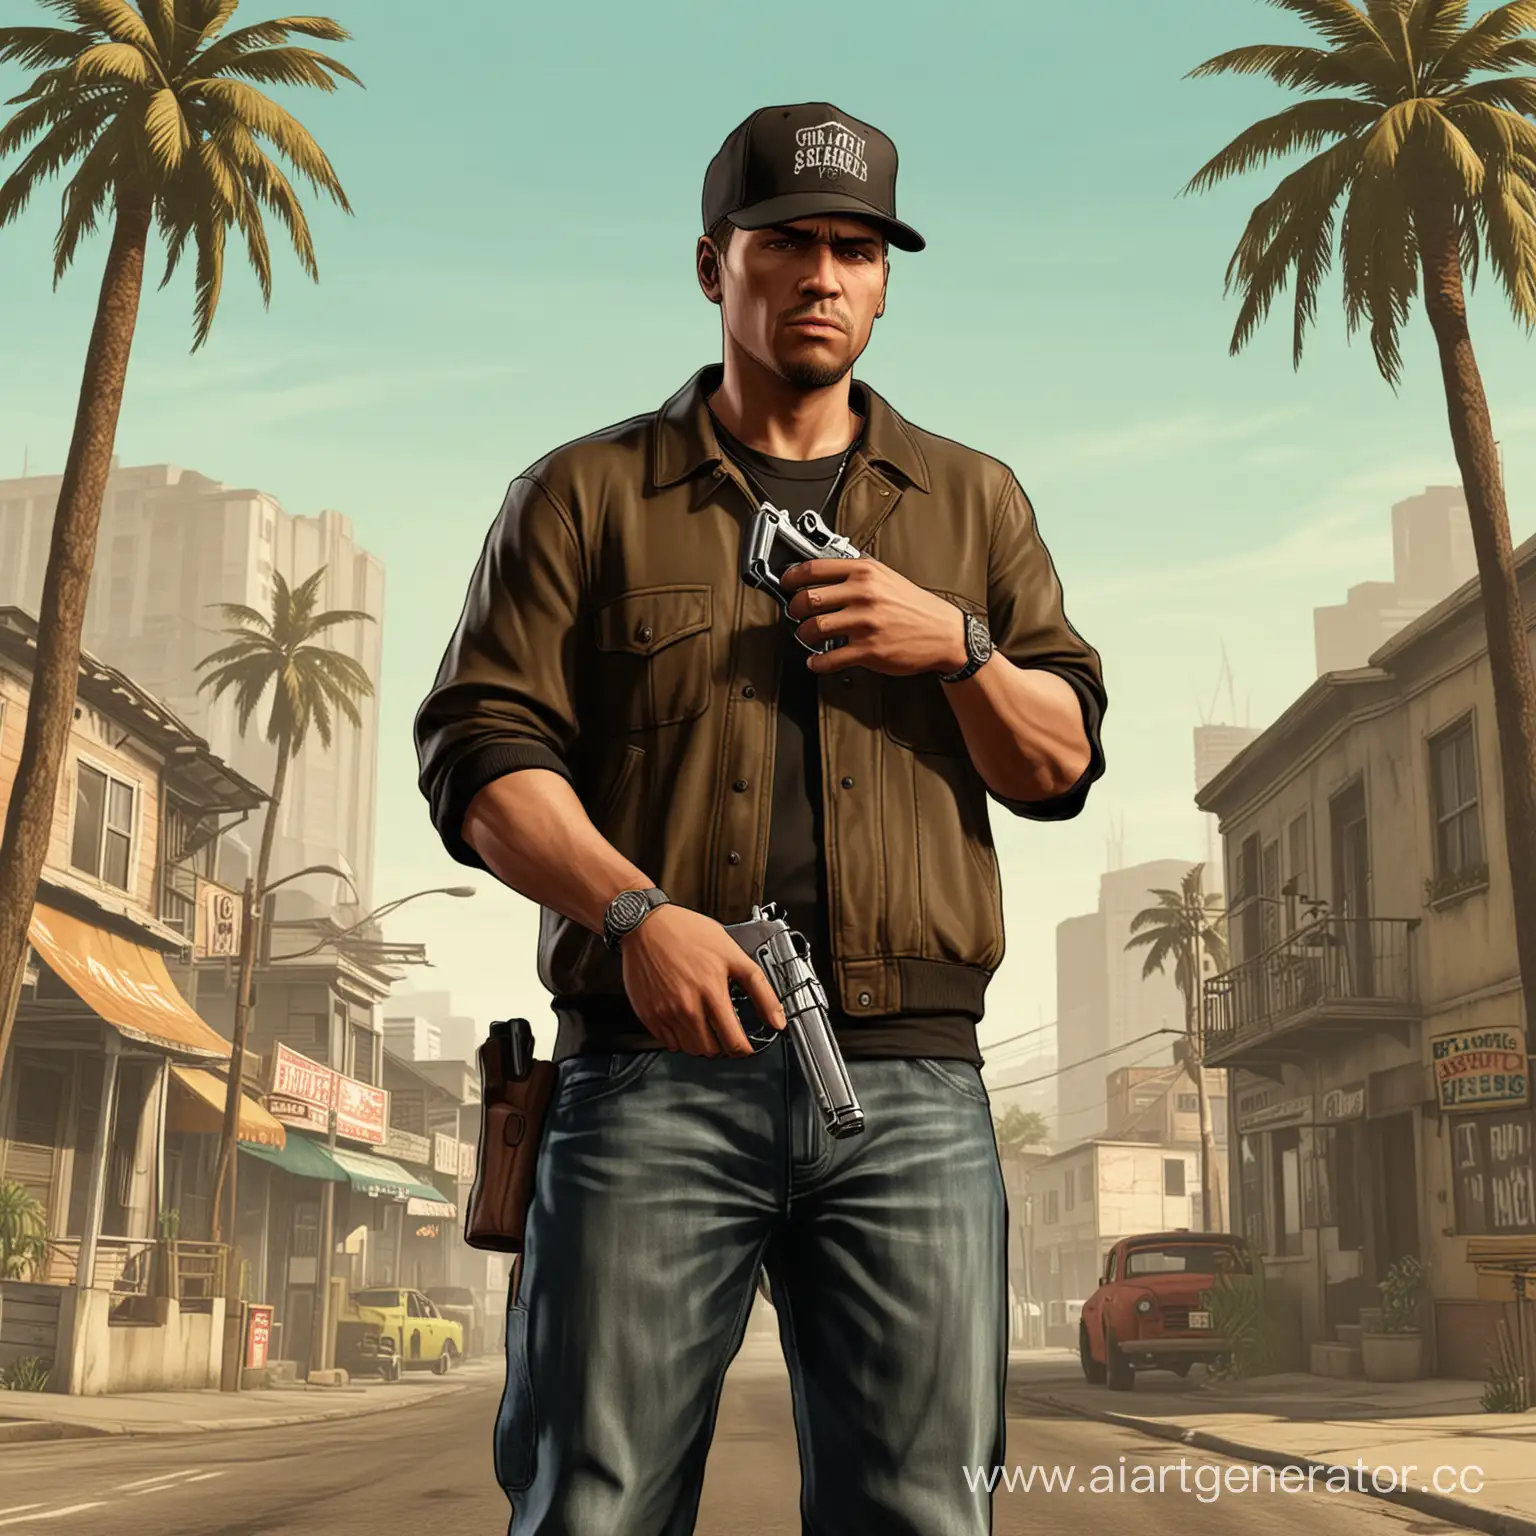 Человек на фоне GTA SAN ANDREAS, стоящий в кепке с пистолетом